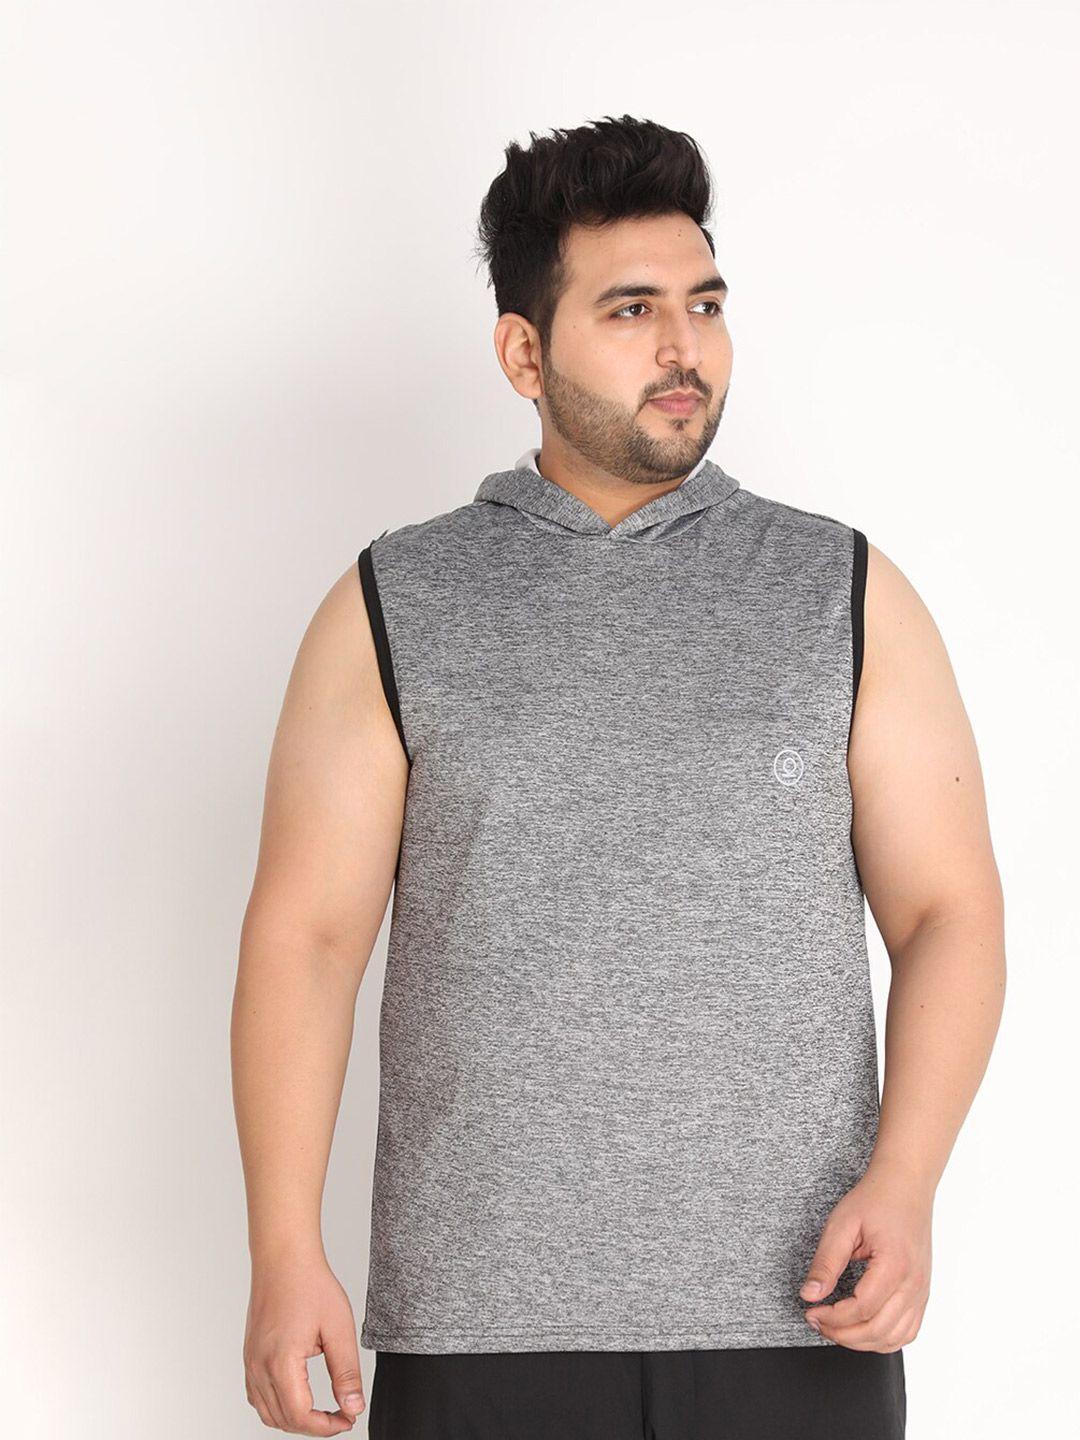 chkokko plus men grey gym sleeveless sports vest